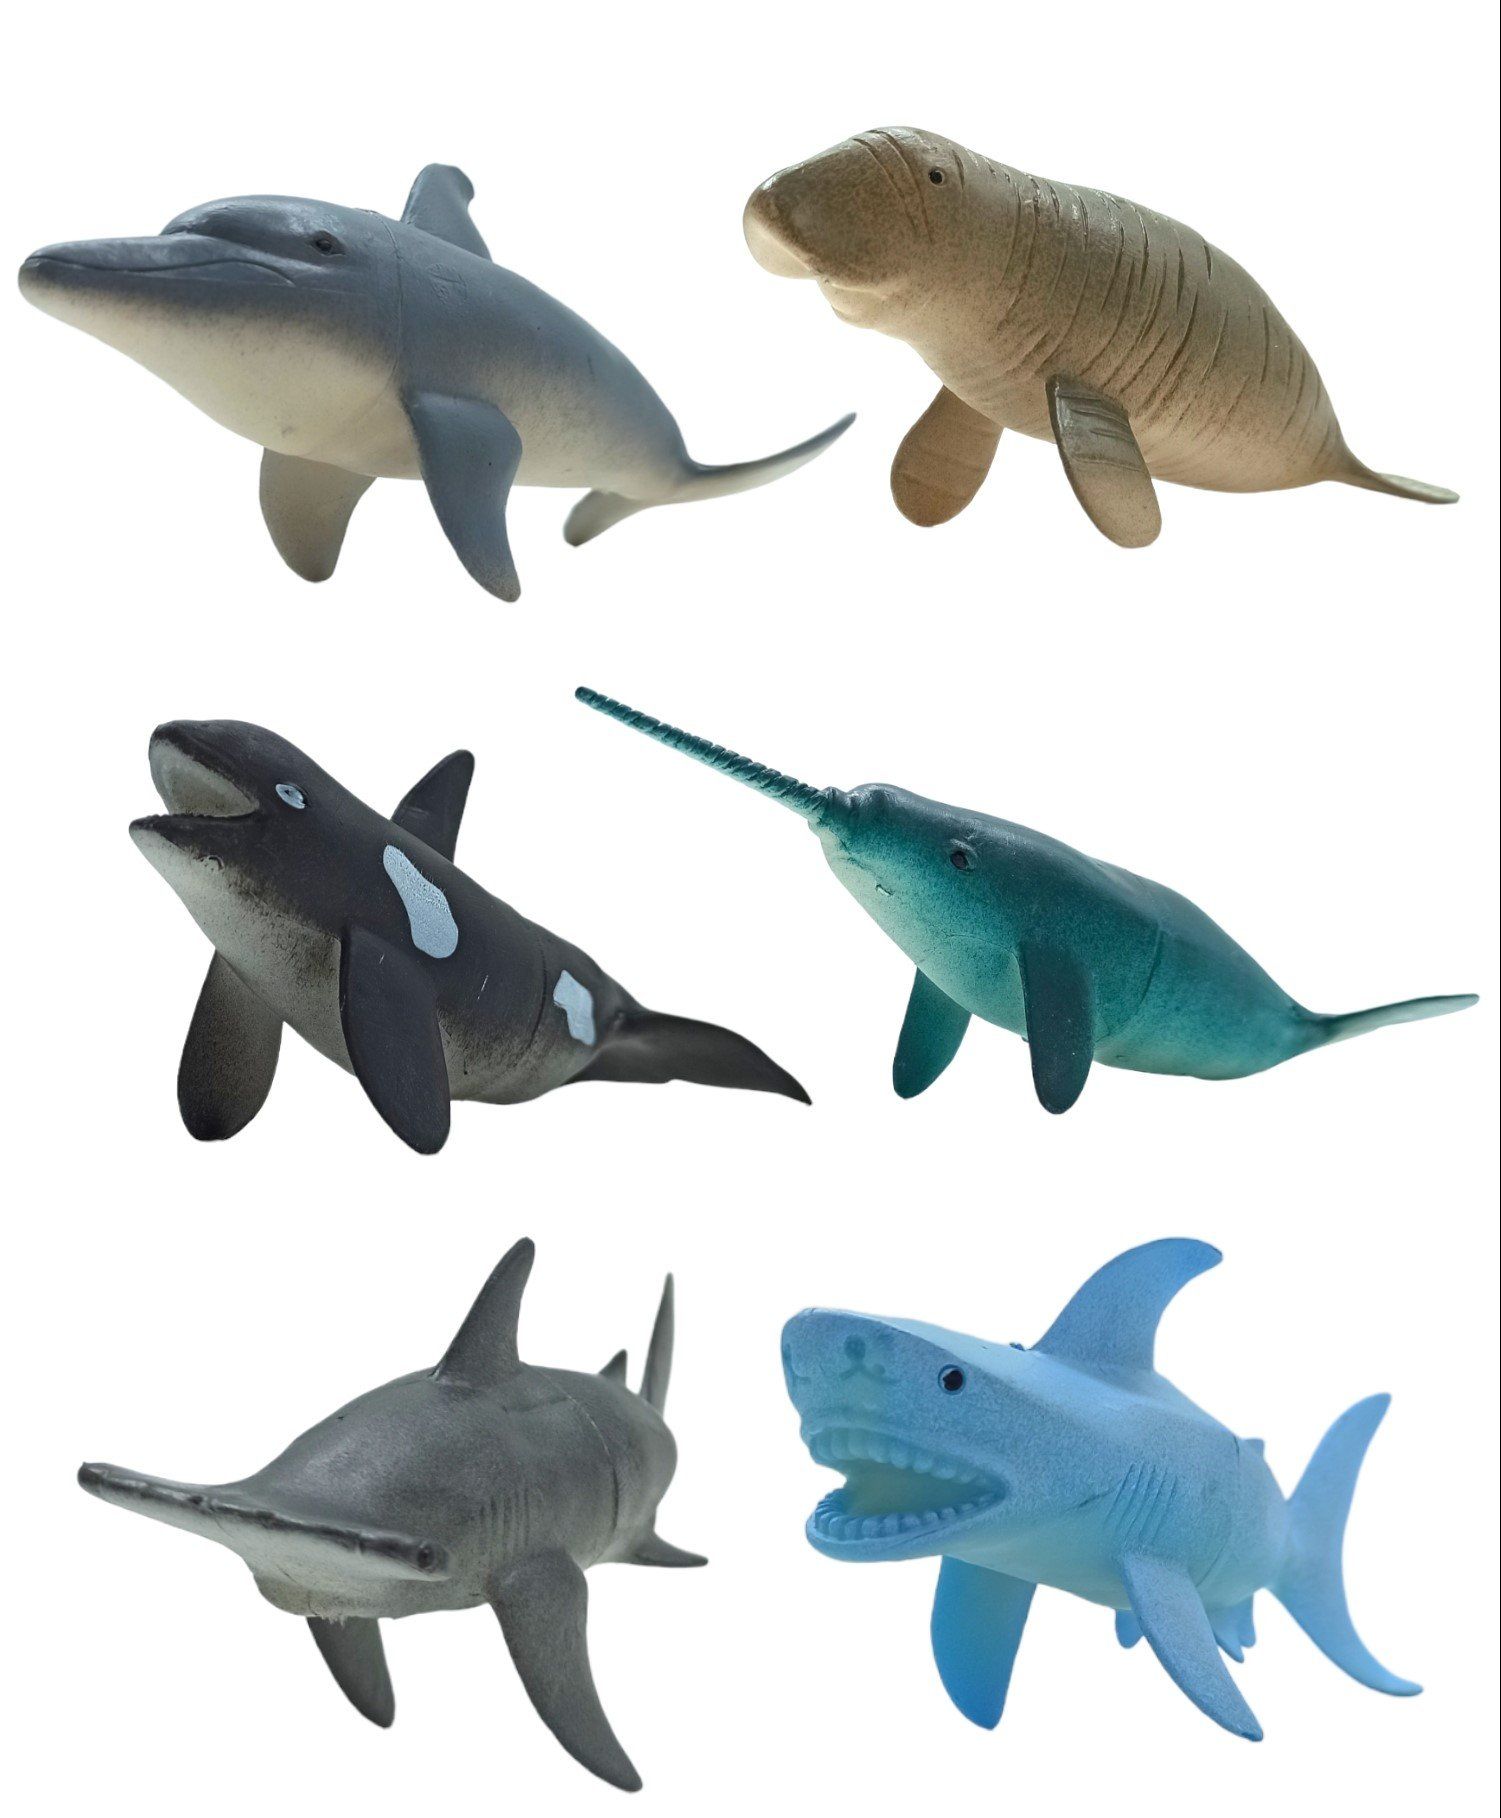 Oyuncak Deniz Canlıları Köpekbalığı, Yunus Balığı, Balina, Kılıç Balığı, Deniz İneği 6'lı Set